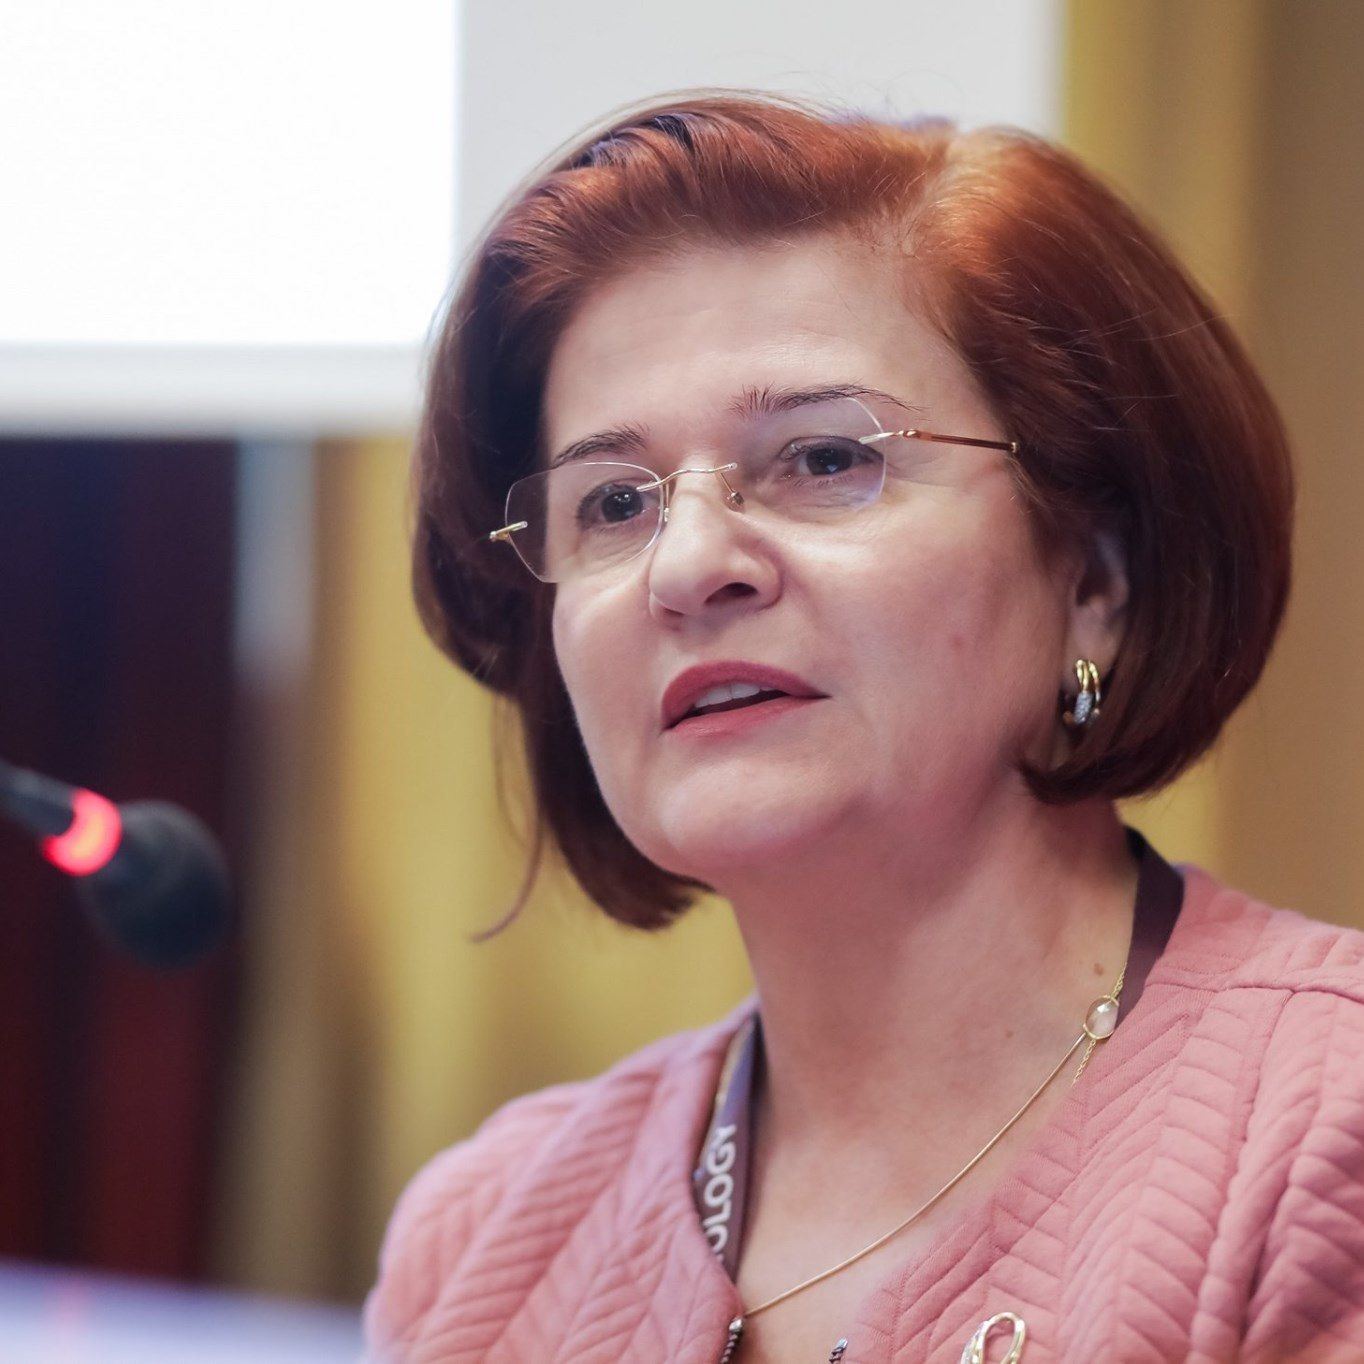 Președintele SRE, prof. dr. Cătălina Poiană: „Este o greşeală să luăm iodură de potasiu”